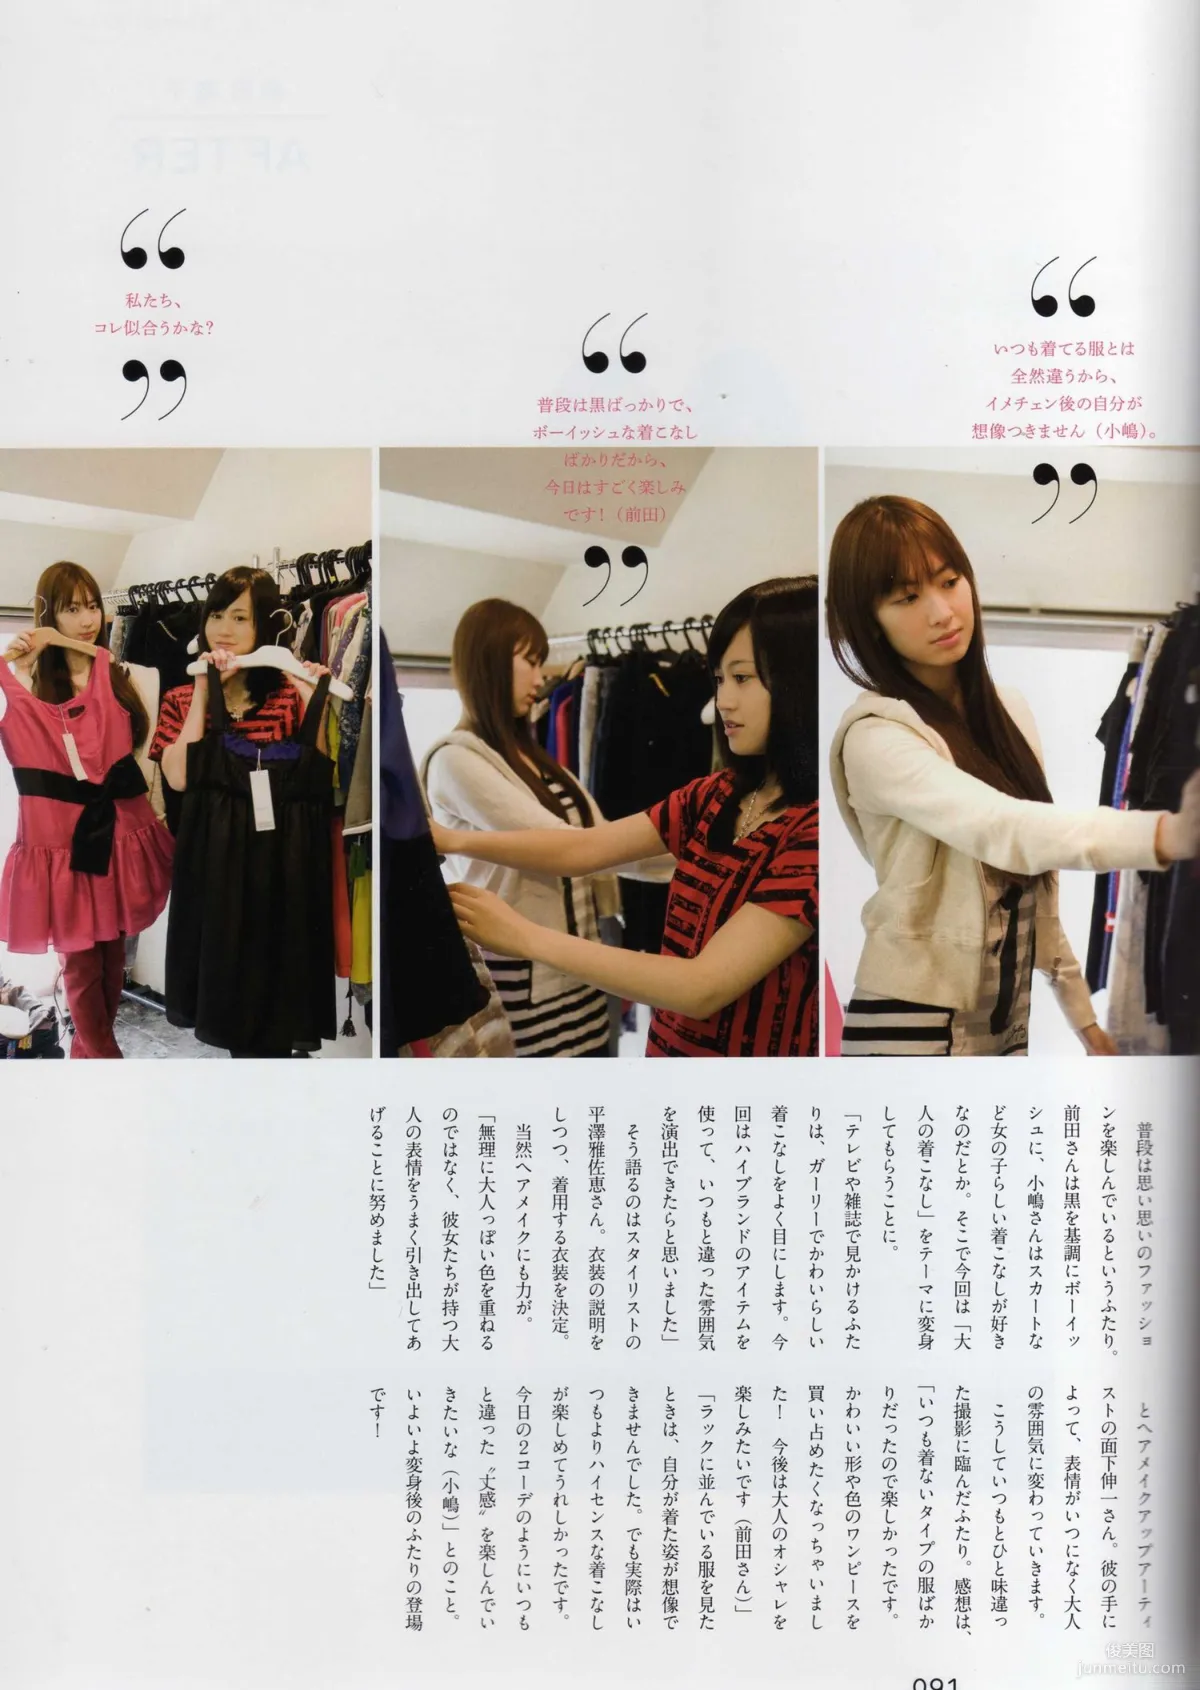 日本AKB48女子组合《2013 Fashion Book内衣秀》写真集82